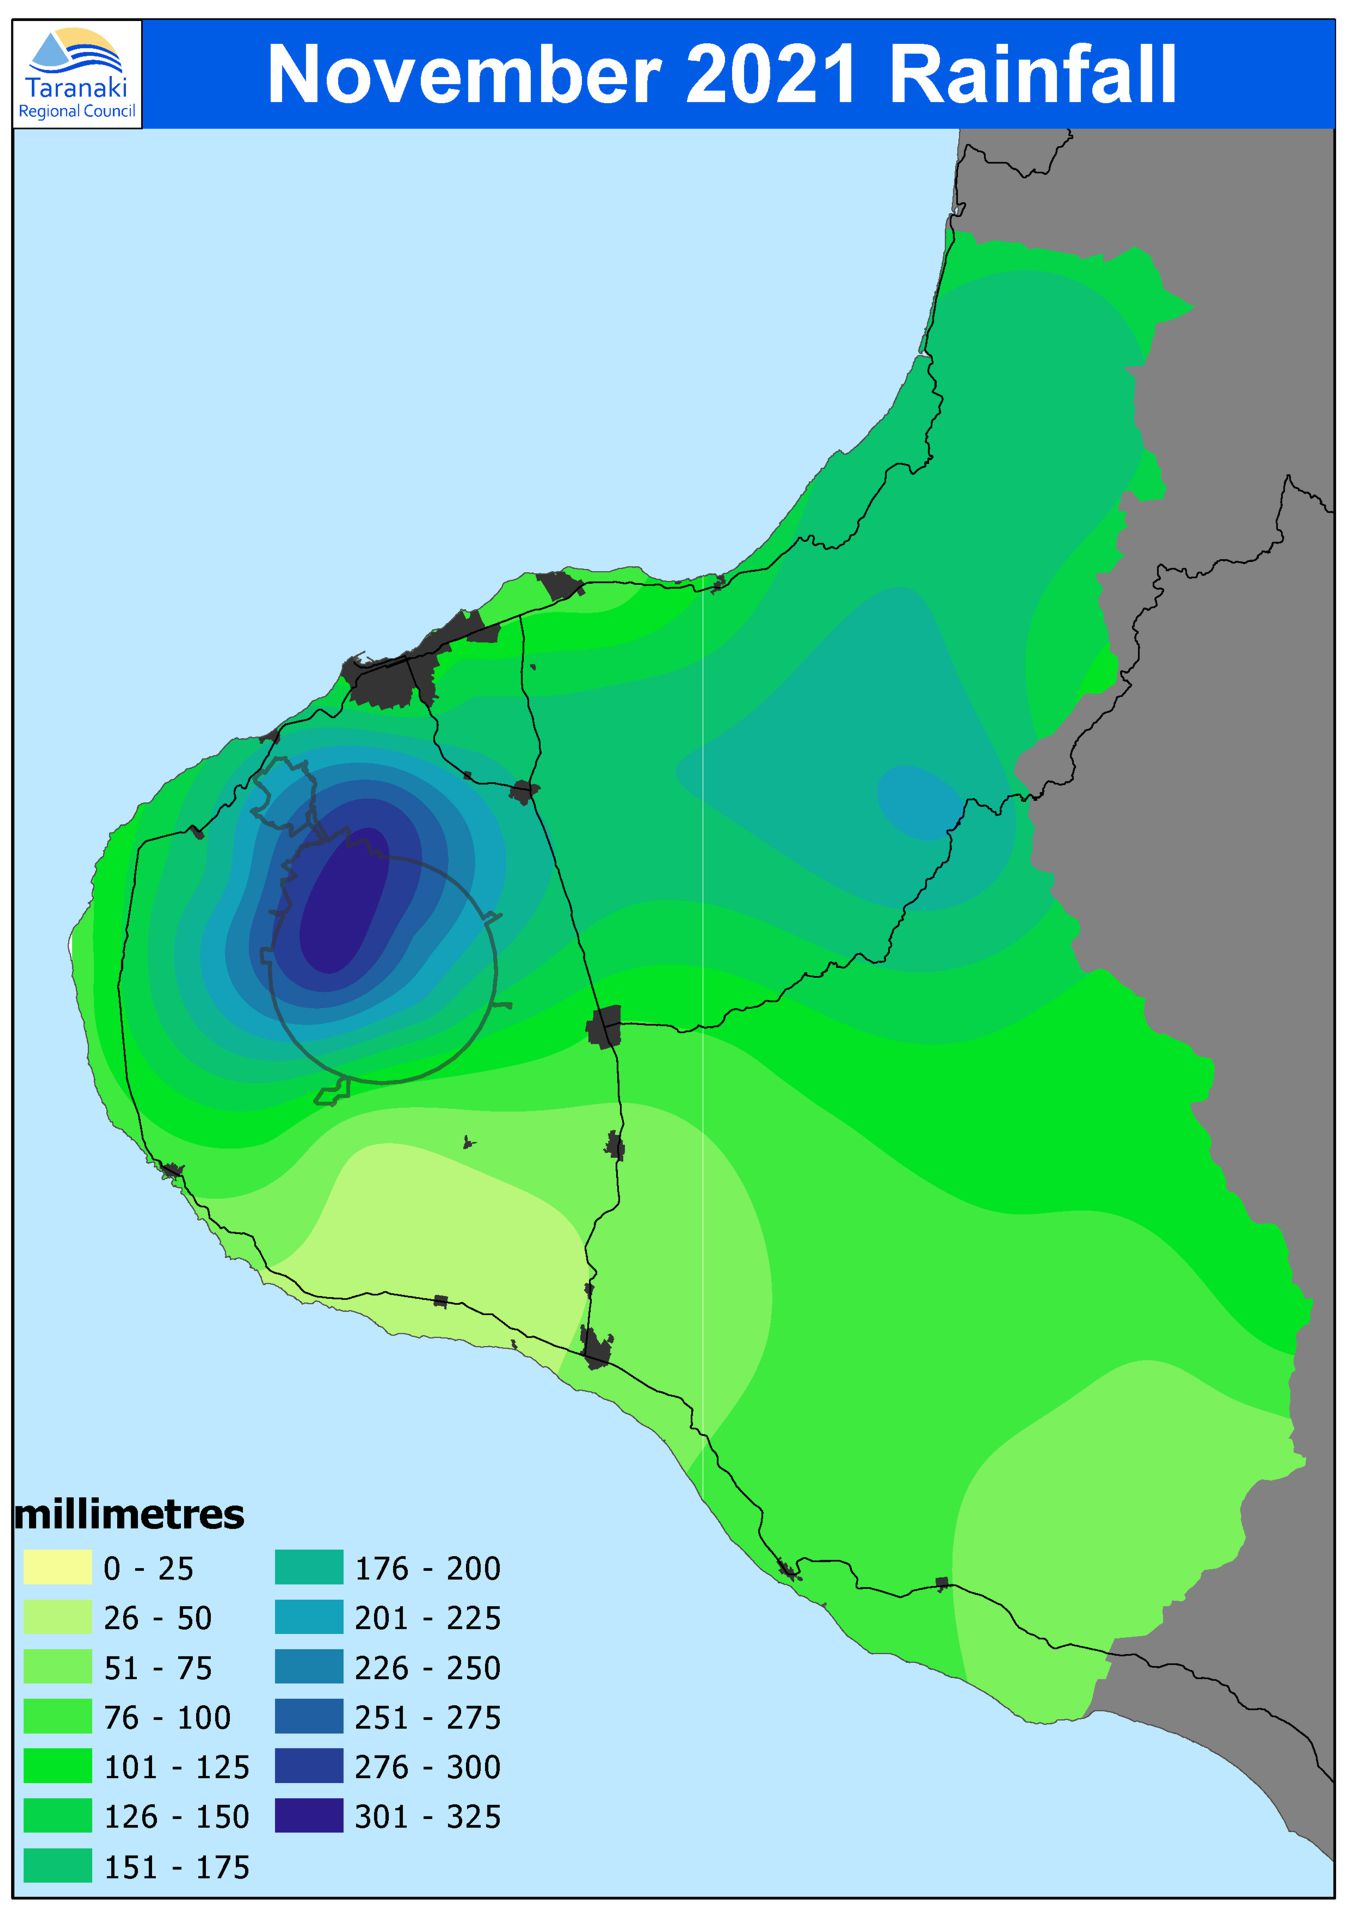 November 2021 rainfall distribution (isohyet map)